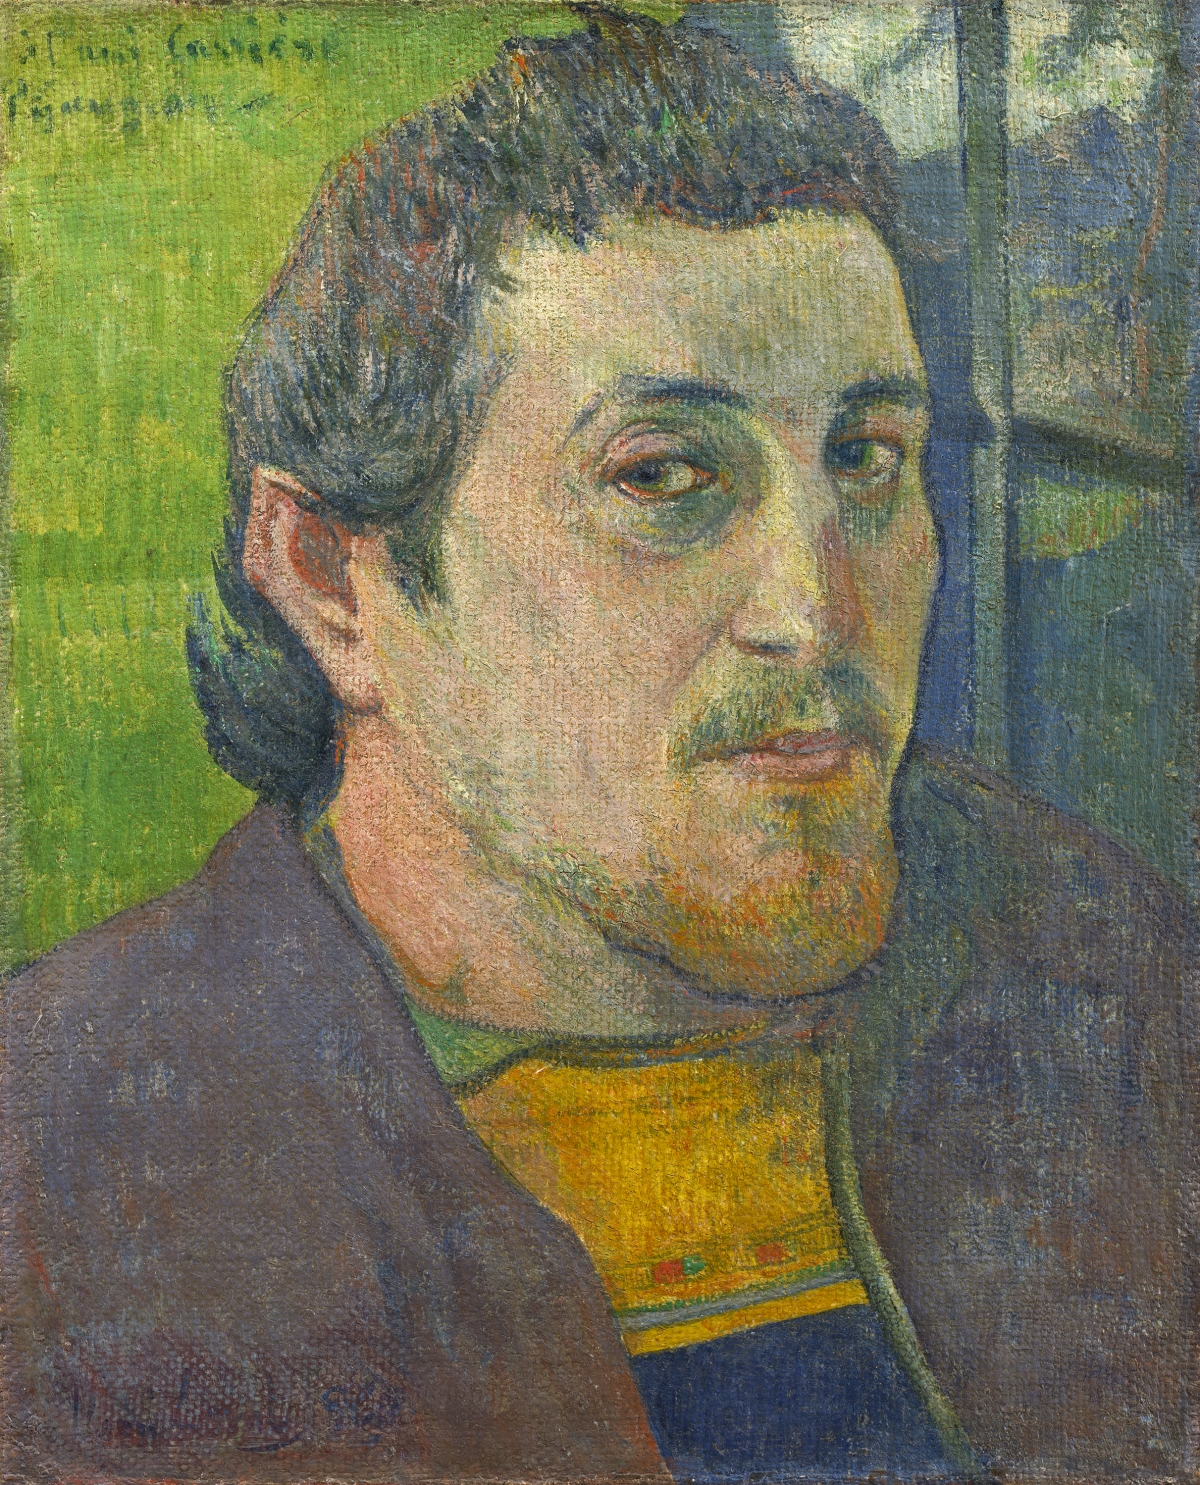 Paul+Gauguin-1848-1903 (379).jpg